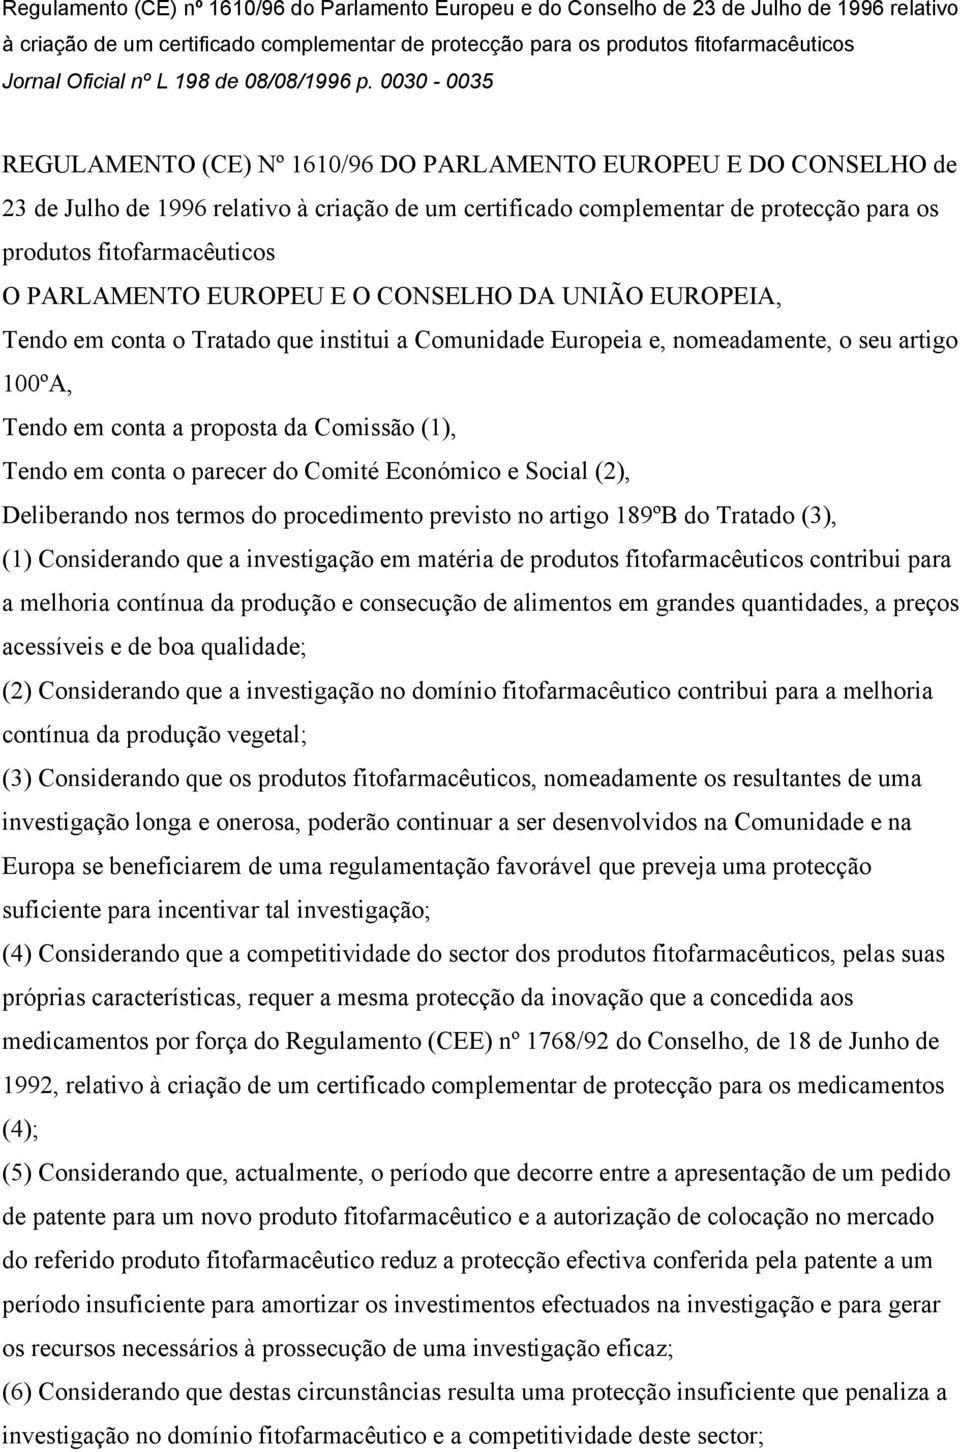 0030-0035 REGULAMENTO (CE) Nº 1610/96 DO PARLAMENTO EUROPEU E DO CONSELHO de 23 de Julho de 1996 relativo à criação de um certificado complementar de protecção para os produtos fitofarmacêuticos O